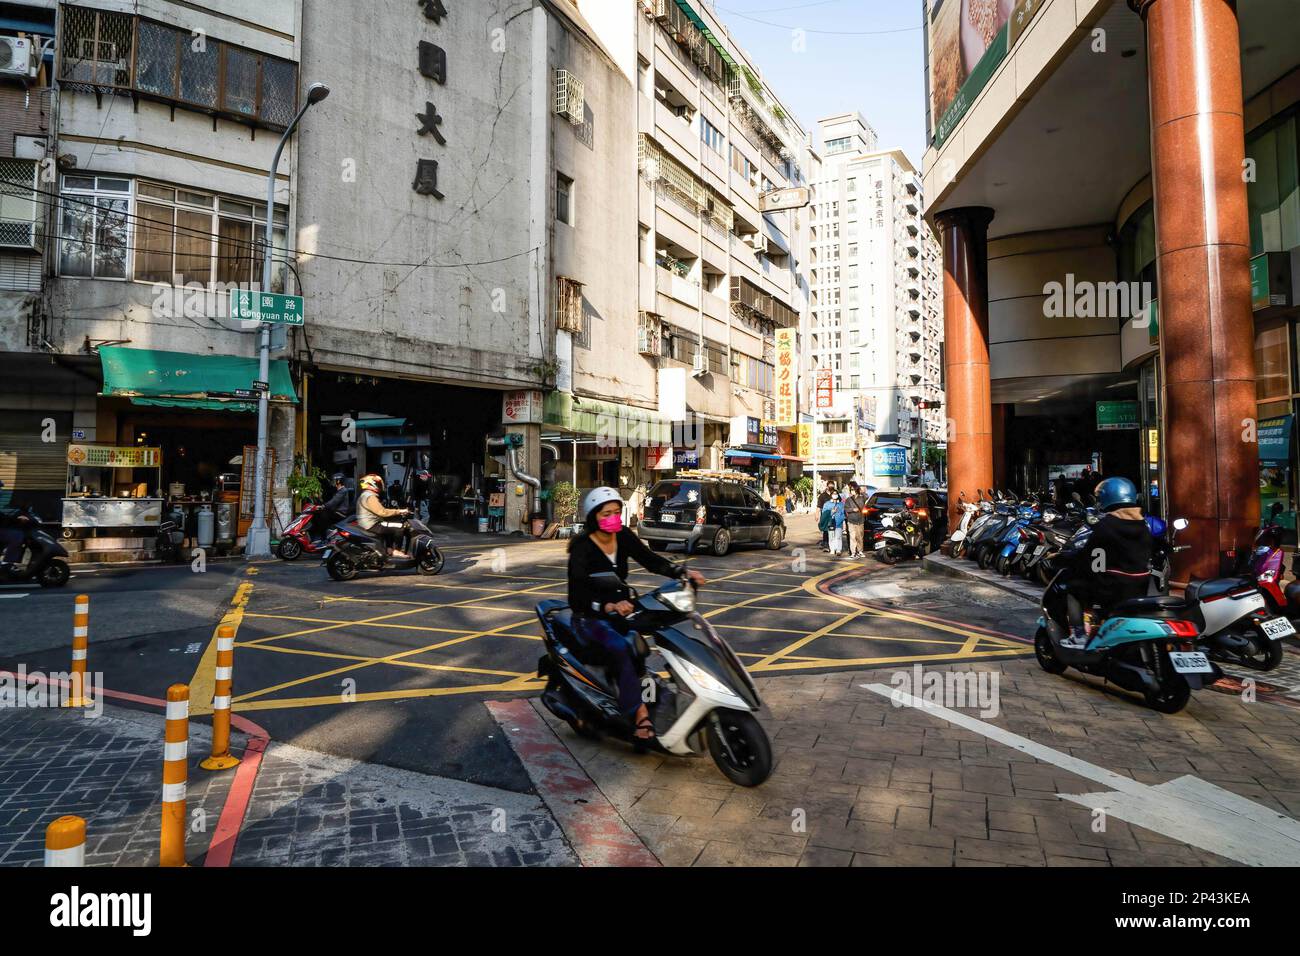 Ein Motorradfahrer schneidet eine Ecke in einer Gasse in Taichung. Das tägliche Leben in Taichung, der zweitgrößten Stadt Taiwans. Um mehr internationale Touristen anzulocken, kündigte die taiwanesische Regierung kürzlich an, dass sie 5000 Taiwan-Dollar (ca. 165 USD) als Teil eines Konjunkturpakets zur Unterstützung der Reisesubventionierung für Touristen bereitstellen werde. Stockfoto